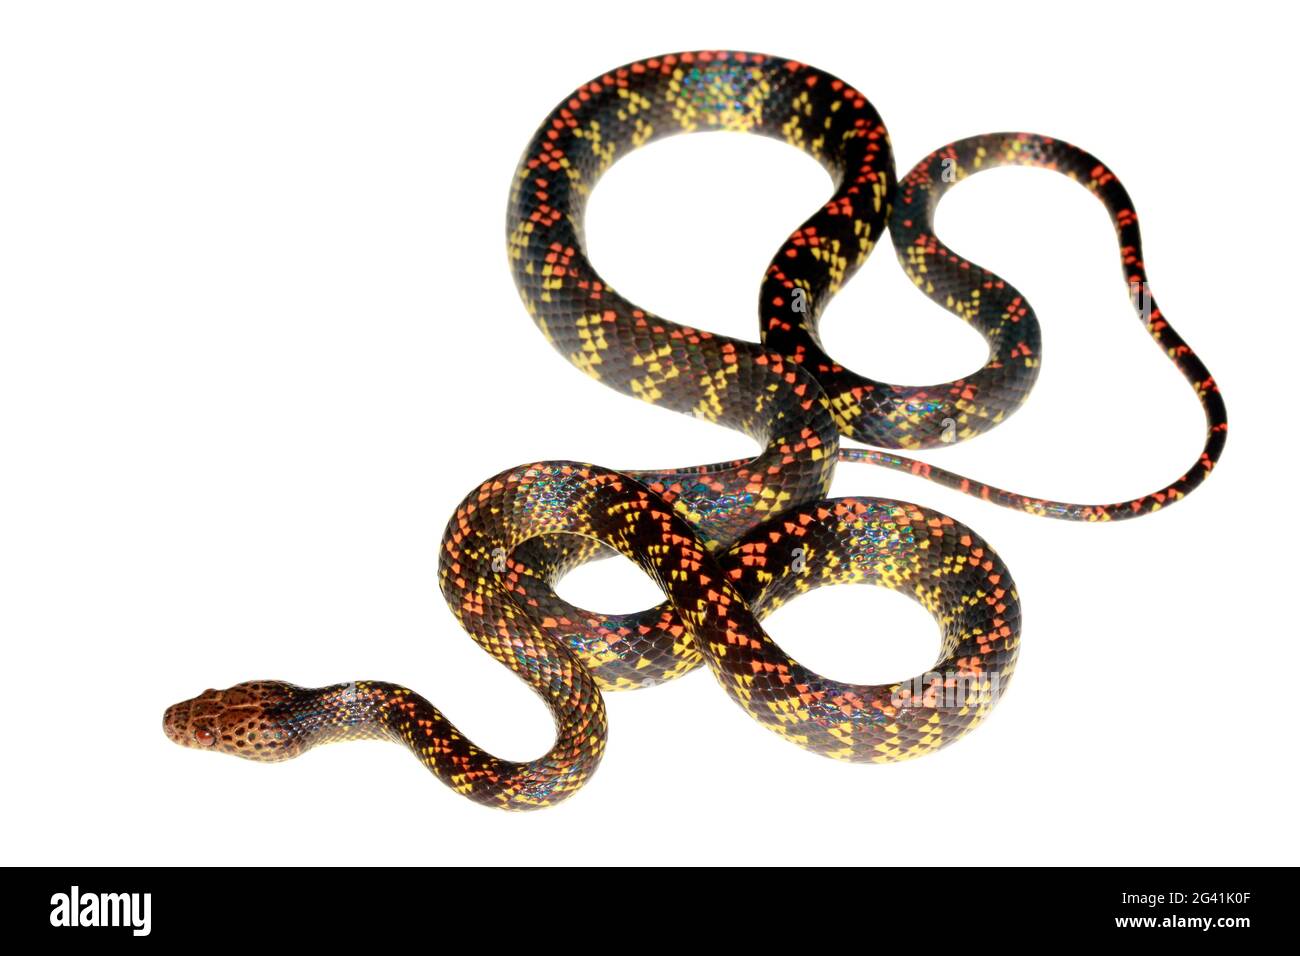 Checkerbelly Snake (Siphlophis cervinus), a rare snake from Orellana province, Amazonian Ecuador Stock Photo